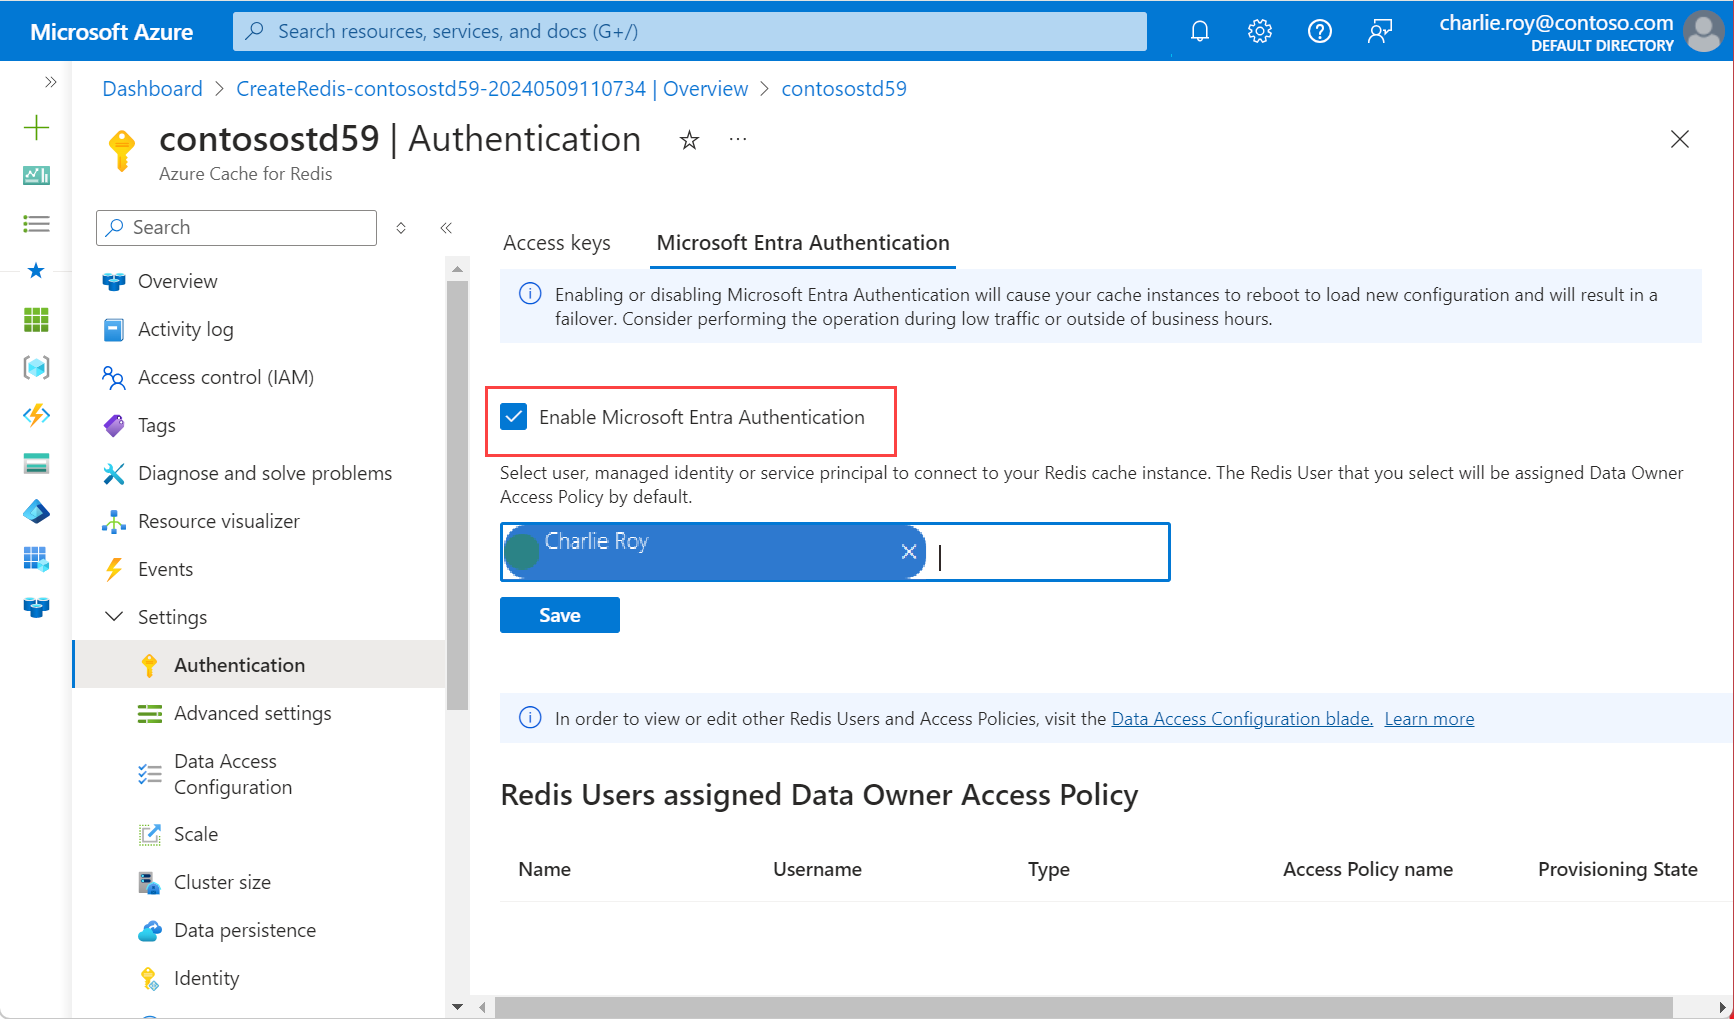 Captura de tela que mostra a autenticação selecionada no menu de recursos e a opção marcada para habilitar a autenticação do Microsoft Entra.